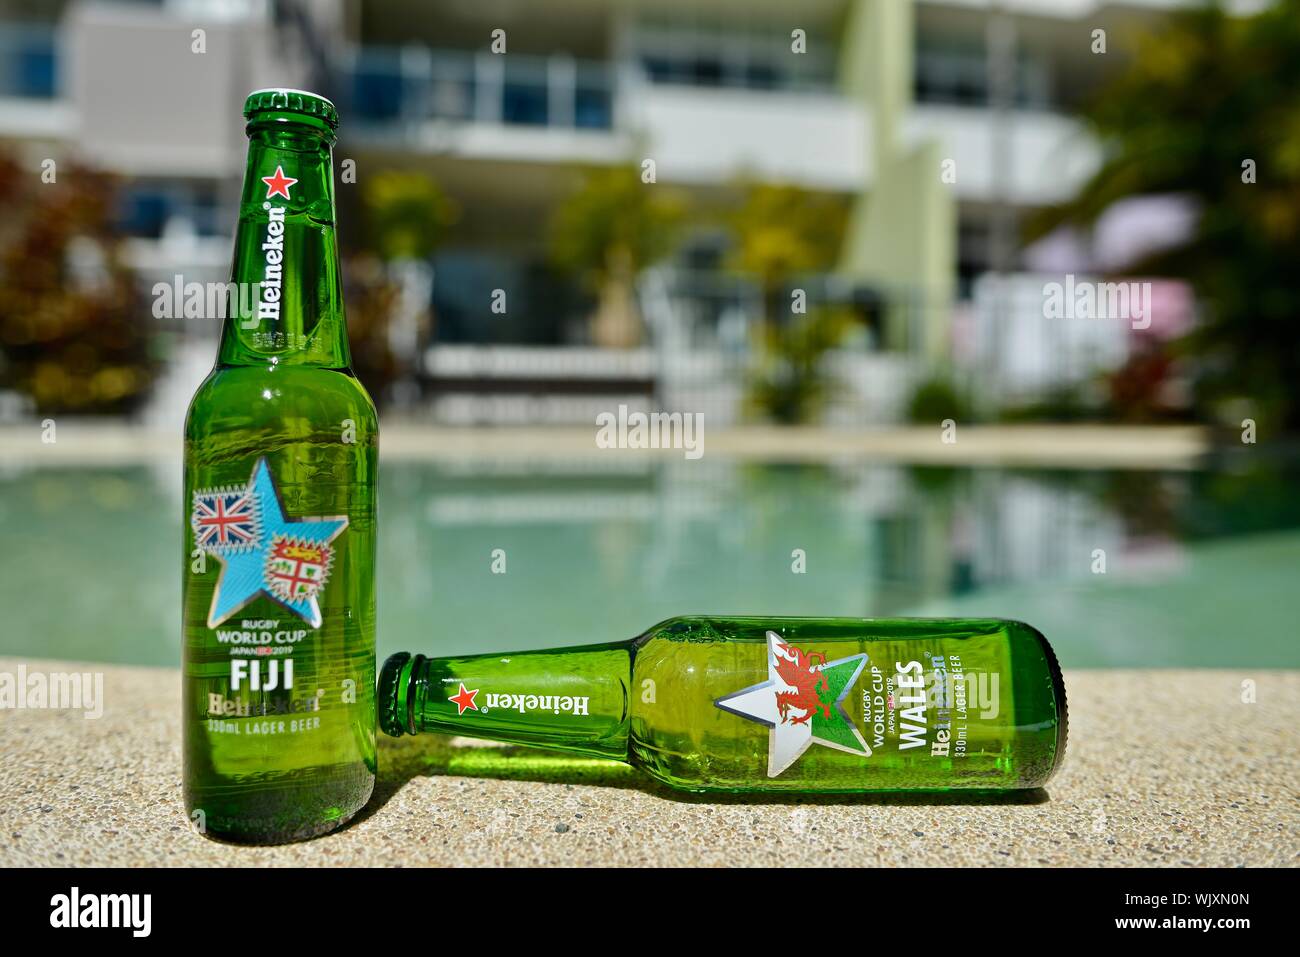 Wales versus Fiji, Fiji wins,Heineken 2019 Japan Rugby world cup beer bottles Stock Photo